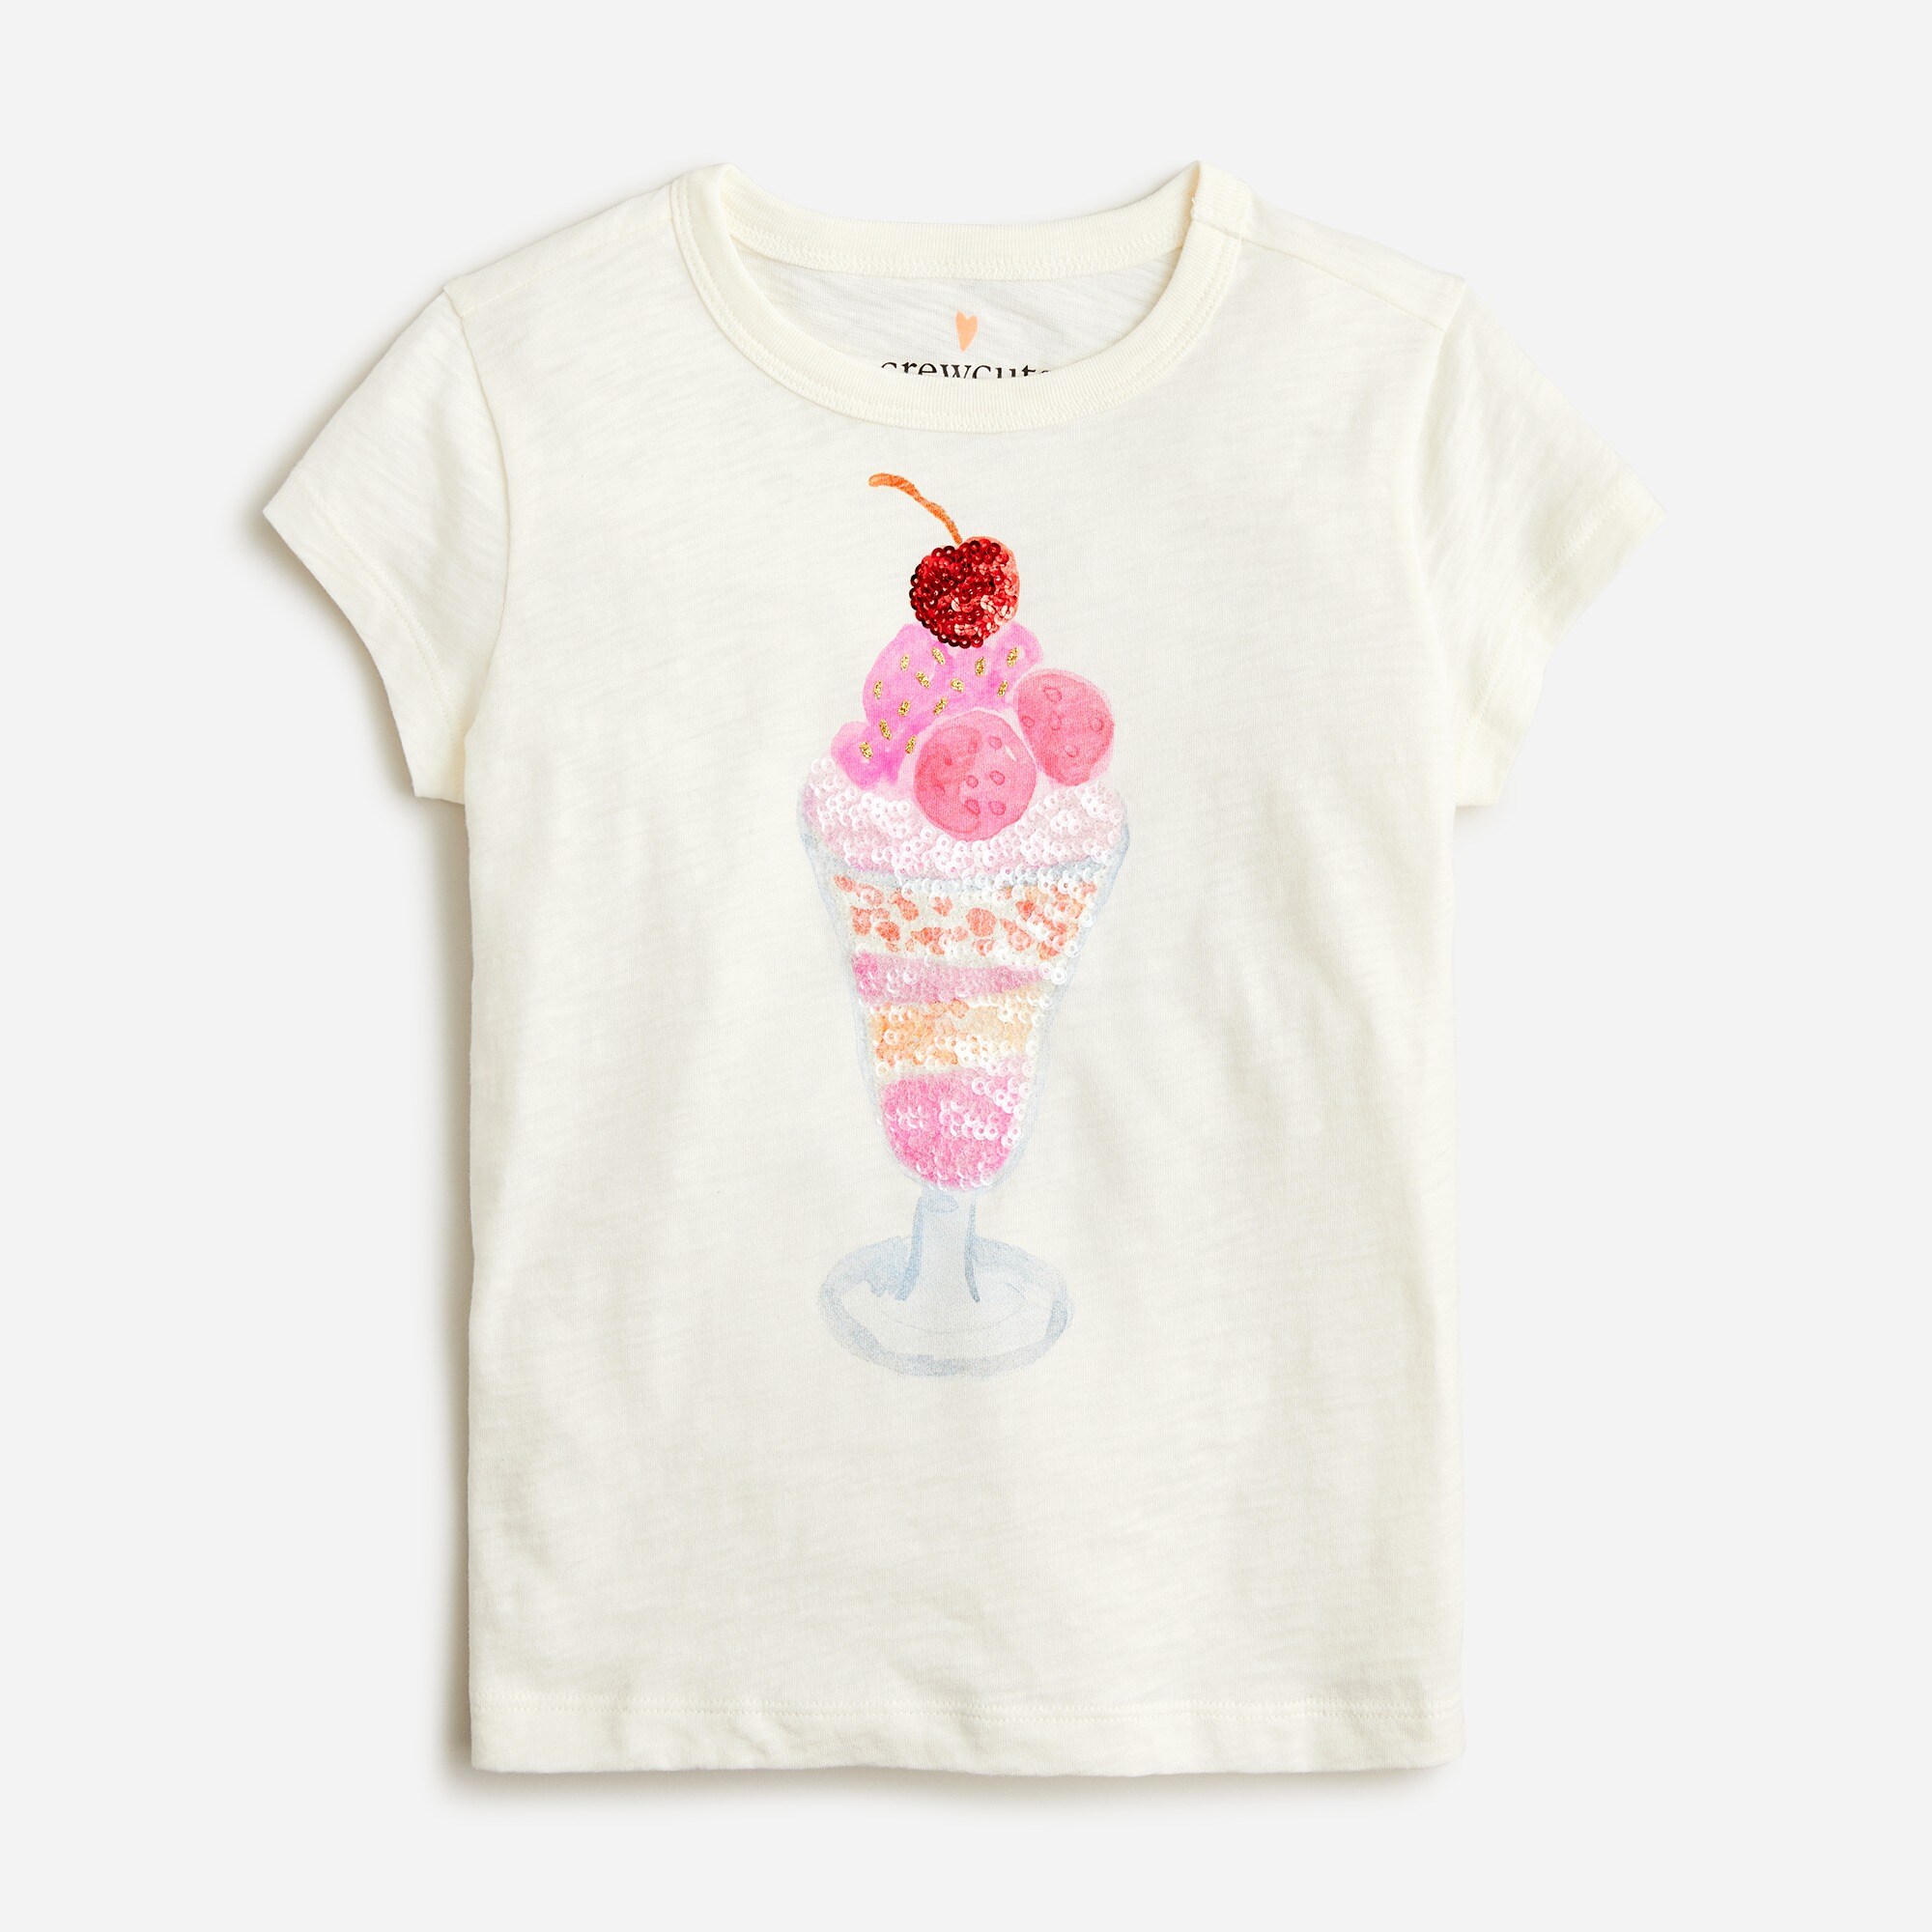  Girls' sequin sundae graphic T-shirt